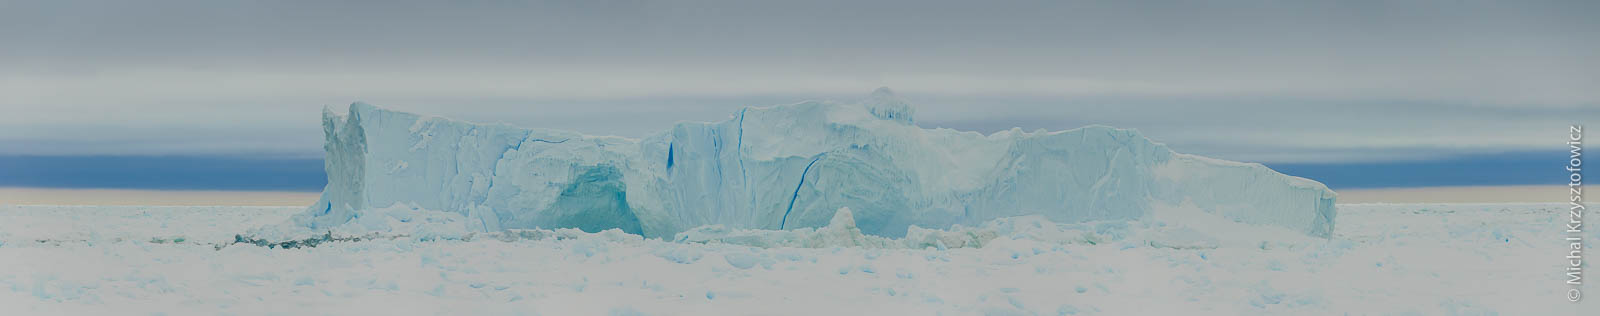 Ice Berg Panorama